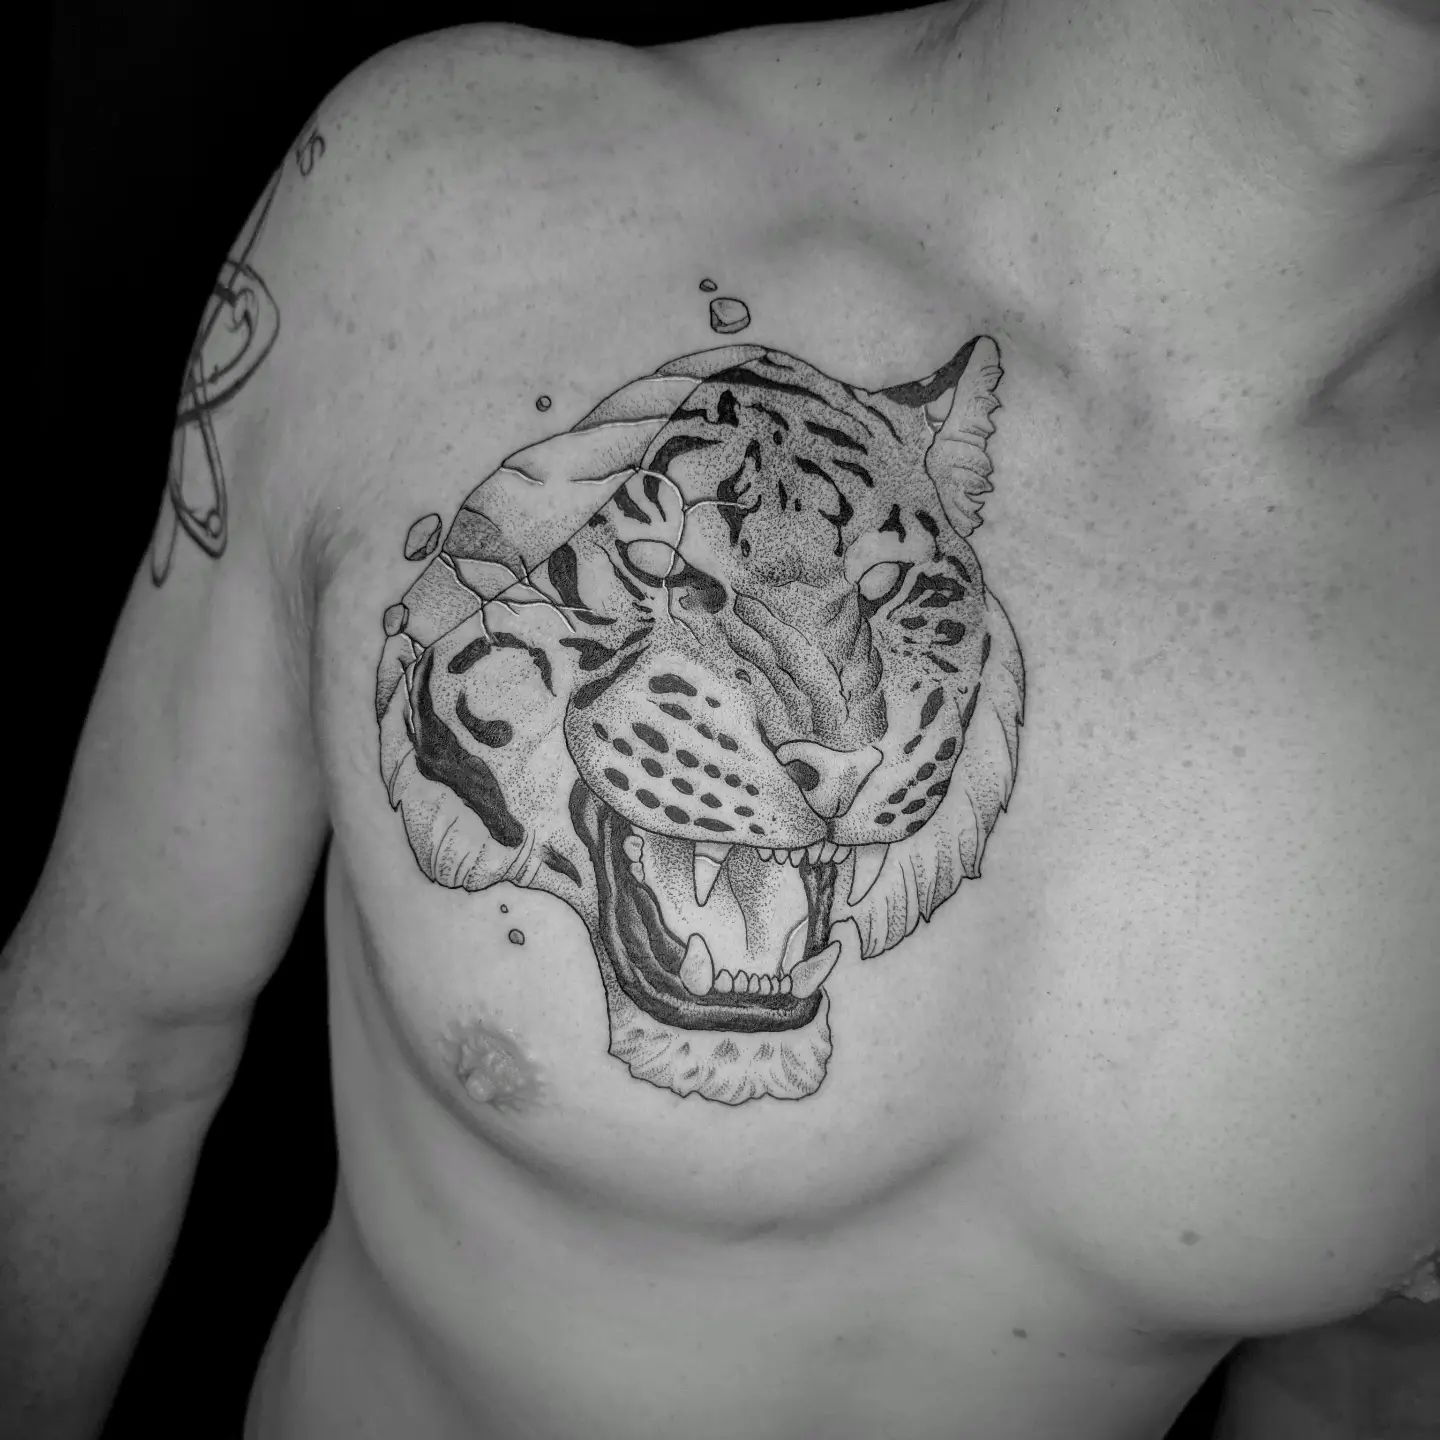 Tigersculpture for @yryryryryryryryryryryryryryr
.
#tattoo #ink #tattoos #tiger